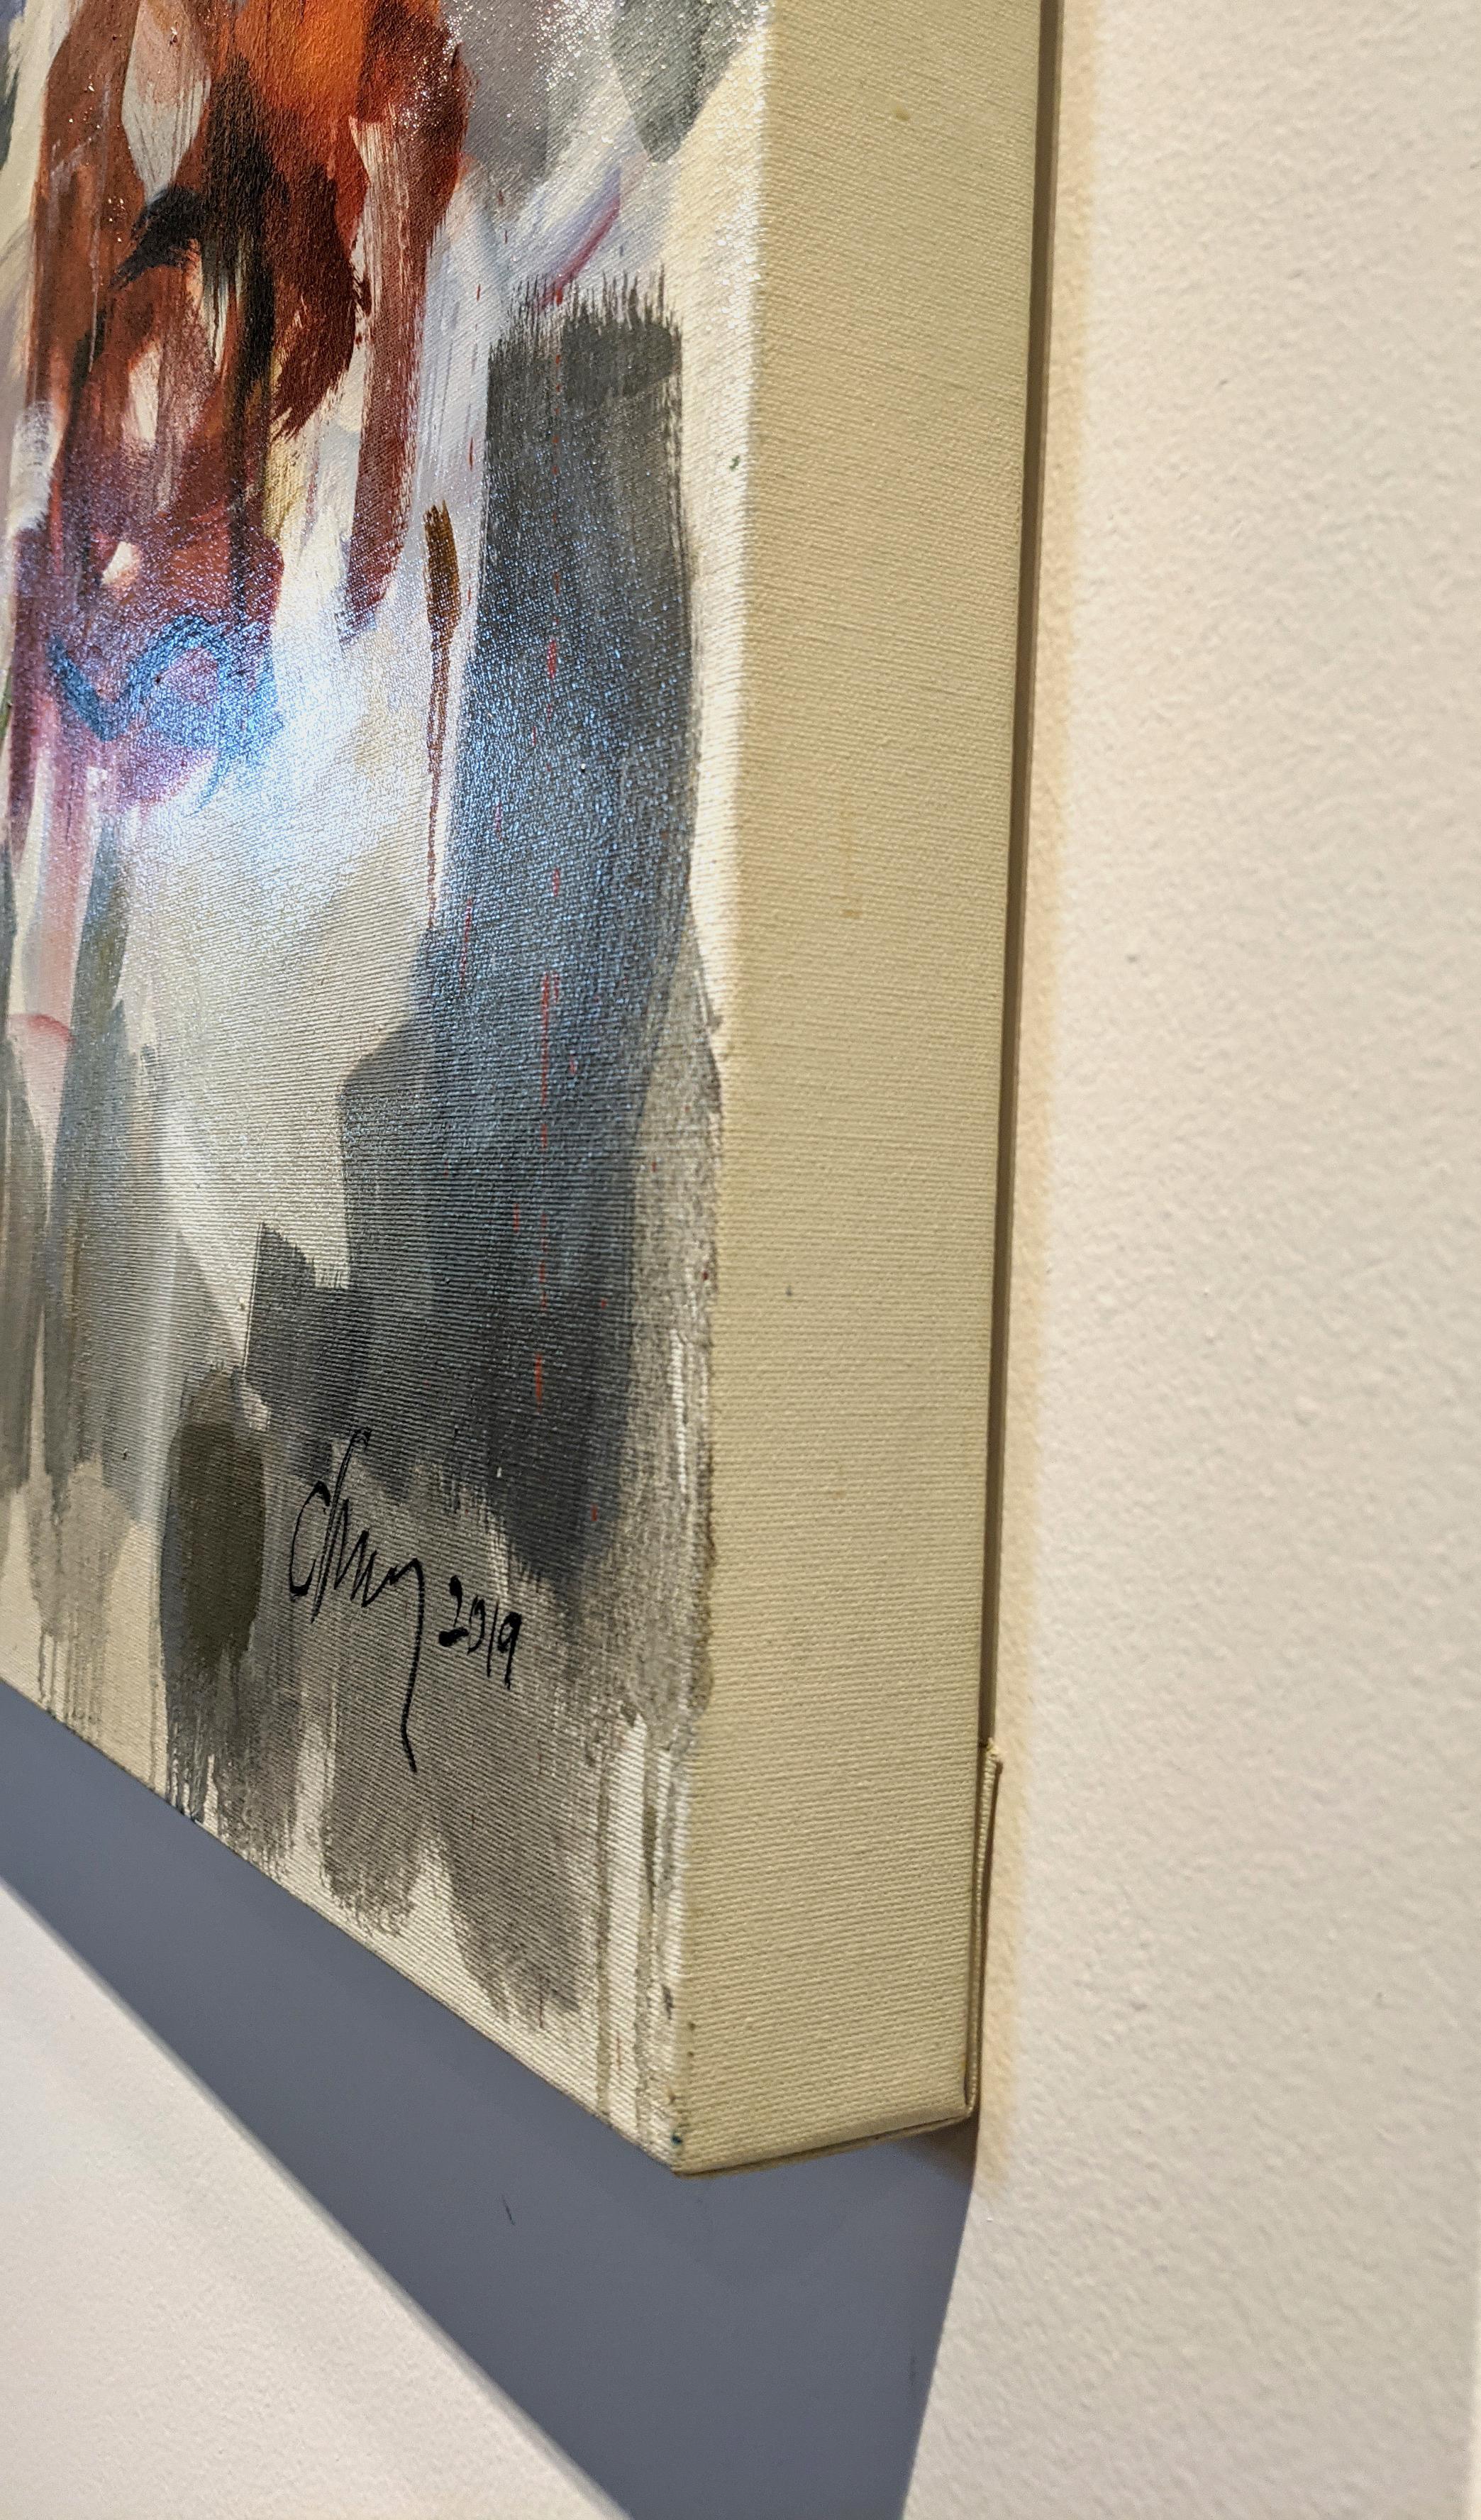 Blue Tarp, Öl auf Leinwand, 60 x 50 in. (ungerahmt, Leinwand in Galerierahmen).

Oonju Chuns großformatige abstrakt-expressionistische Gemälde bedienen sich auf reizvolle Weise der Grundlagen guter, nicht-gegenständlicher Kommunikation. Ihre